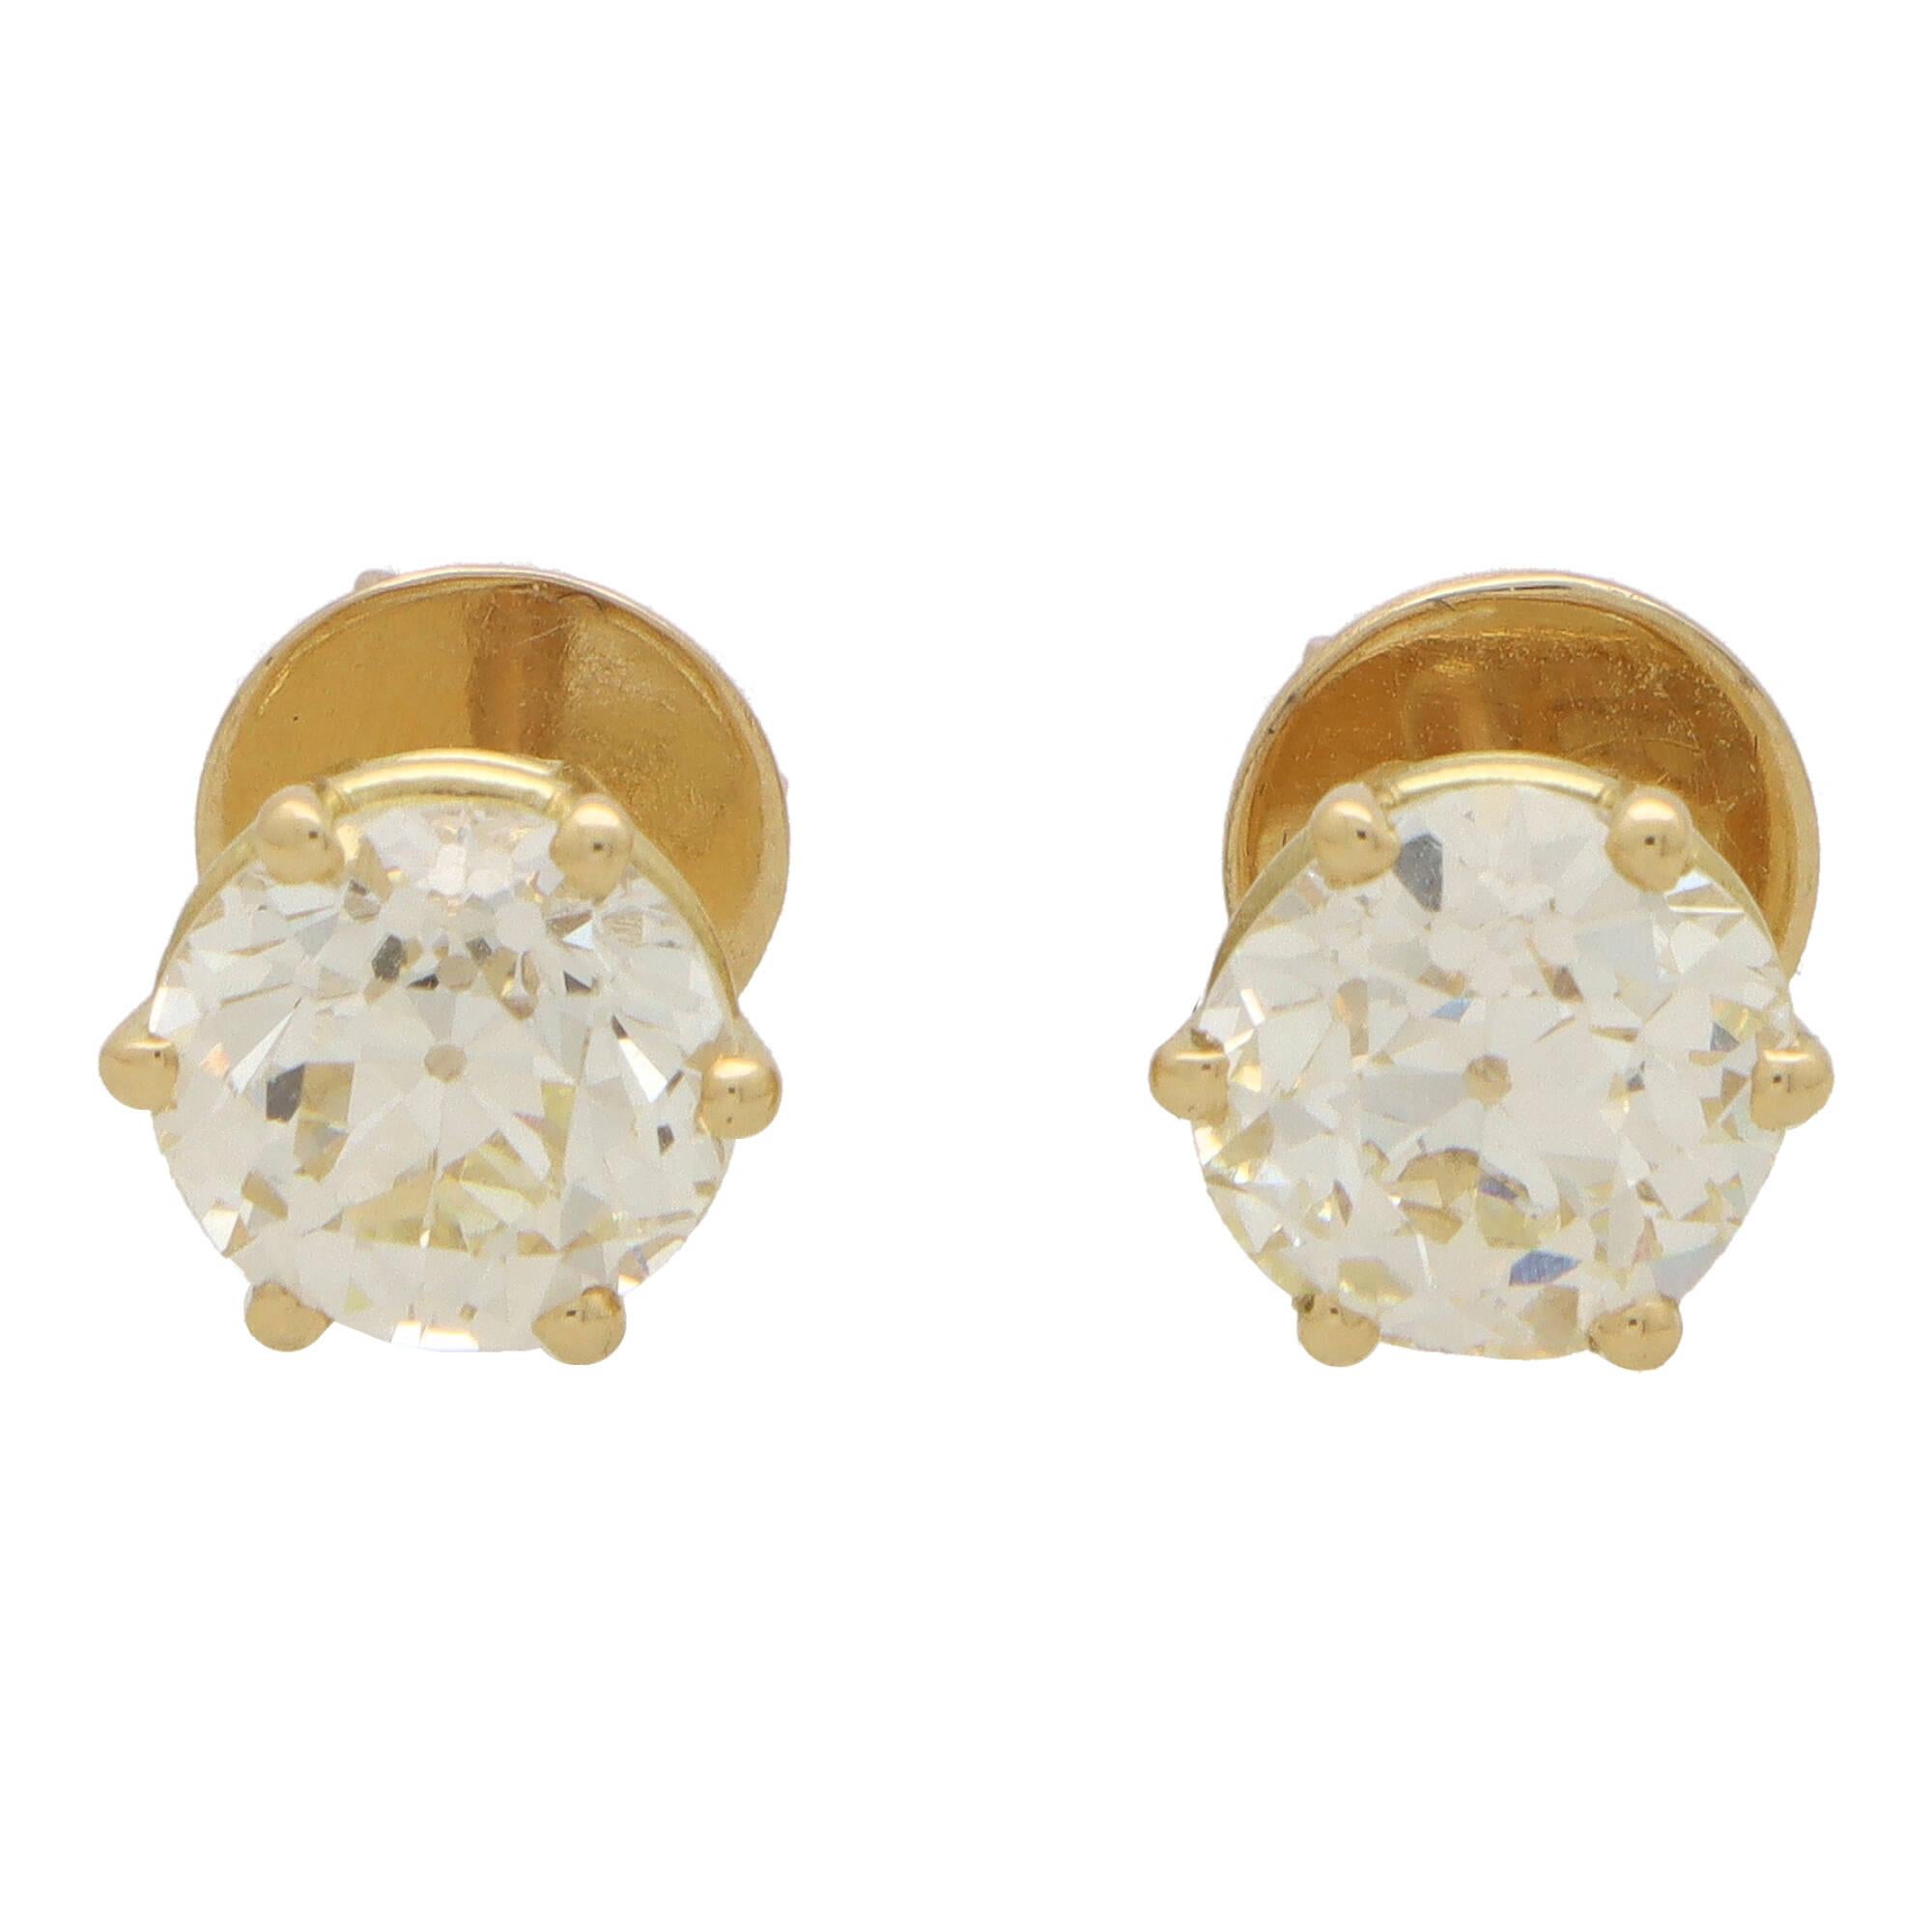 Ein prächtiges Paar Ohrstecker mit Diamanten im alten Schliff, gefasst in Platin.

Jeder Ohrring verfügt über einen wunderschönen Diamanten im Altschliff, der mit vier Krallen sicher in einer offenen Fassung gefasst ist. Die Ohrringe werden mit